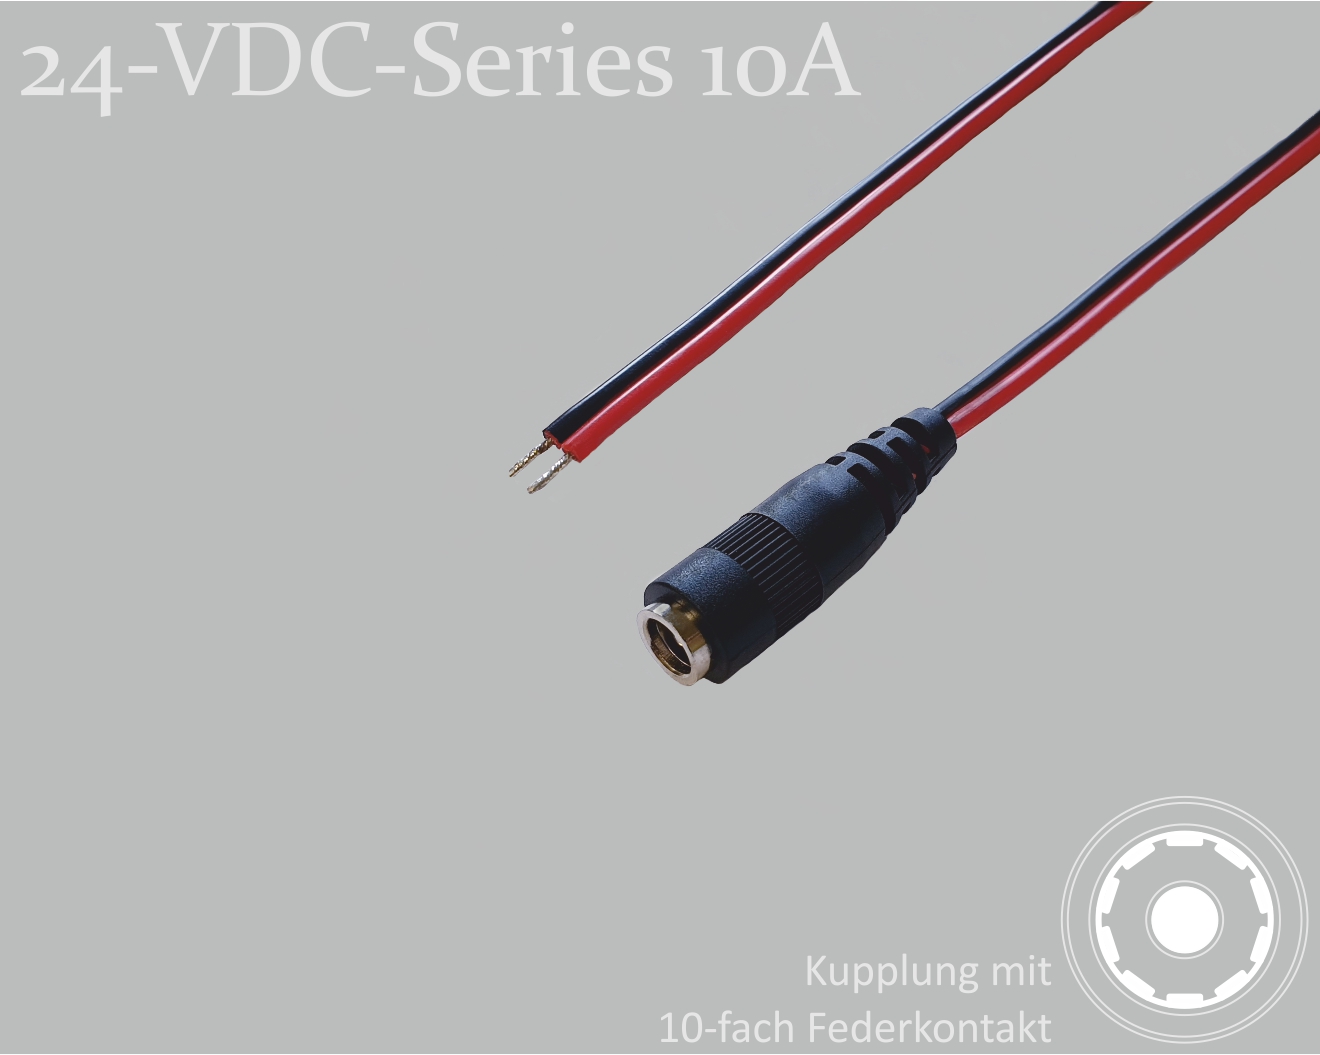 24-VDC-Series 10A, DC-Anschlusskabel, DC-Kupplung mit 10-Federkontakt 2,1x5,5mm, Flachkabel 2x0,75mm², rot/schwarz, verzinnte Enden, 0,75m